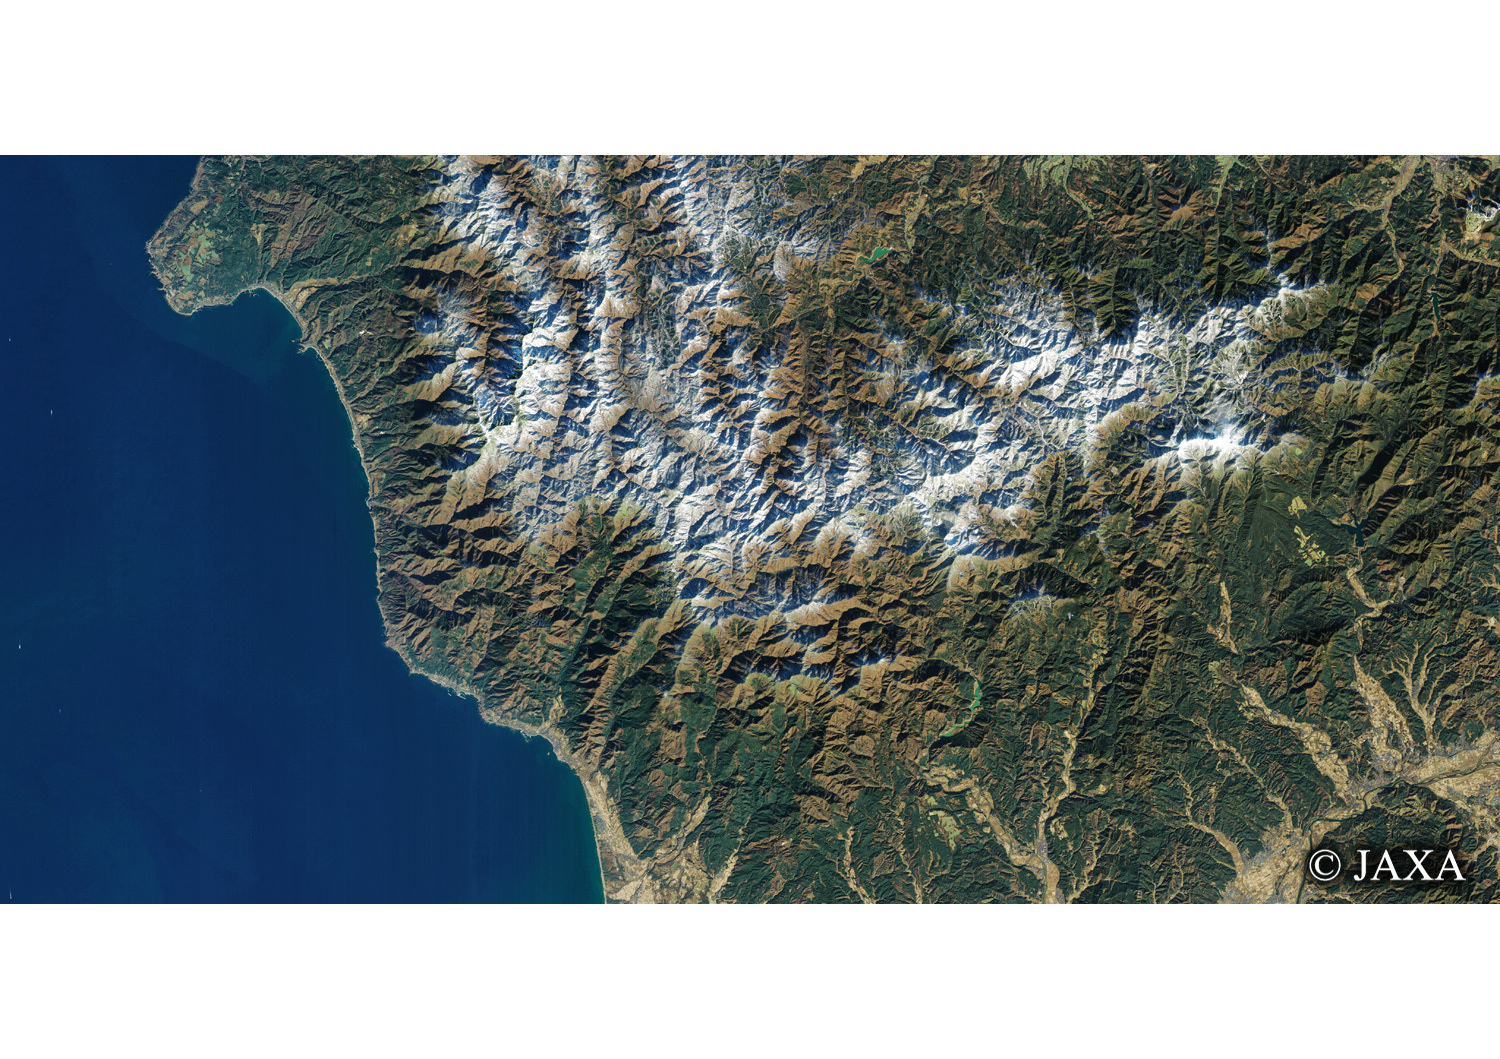 だいちから見た日本の都市 白神山地:衛星画像